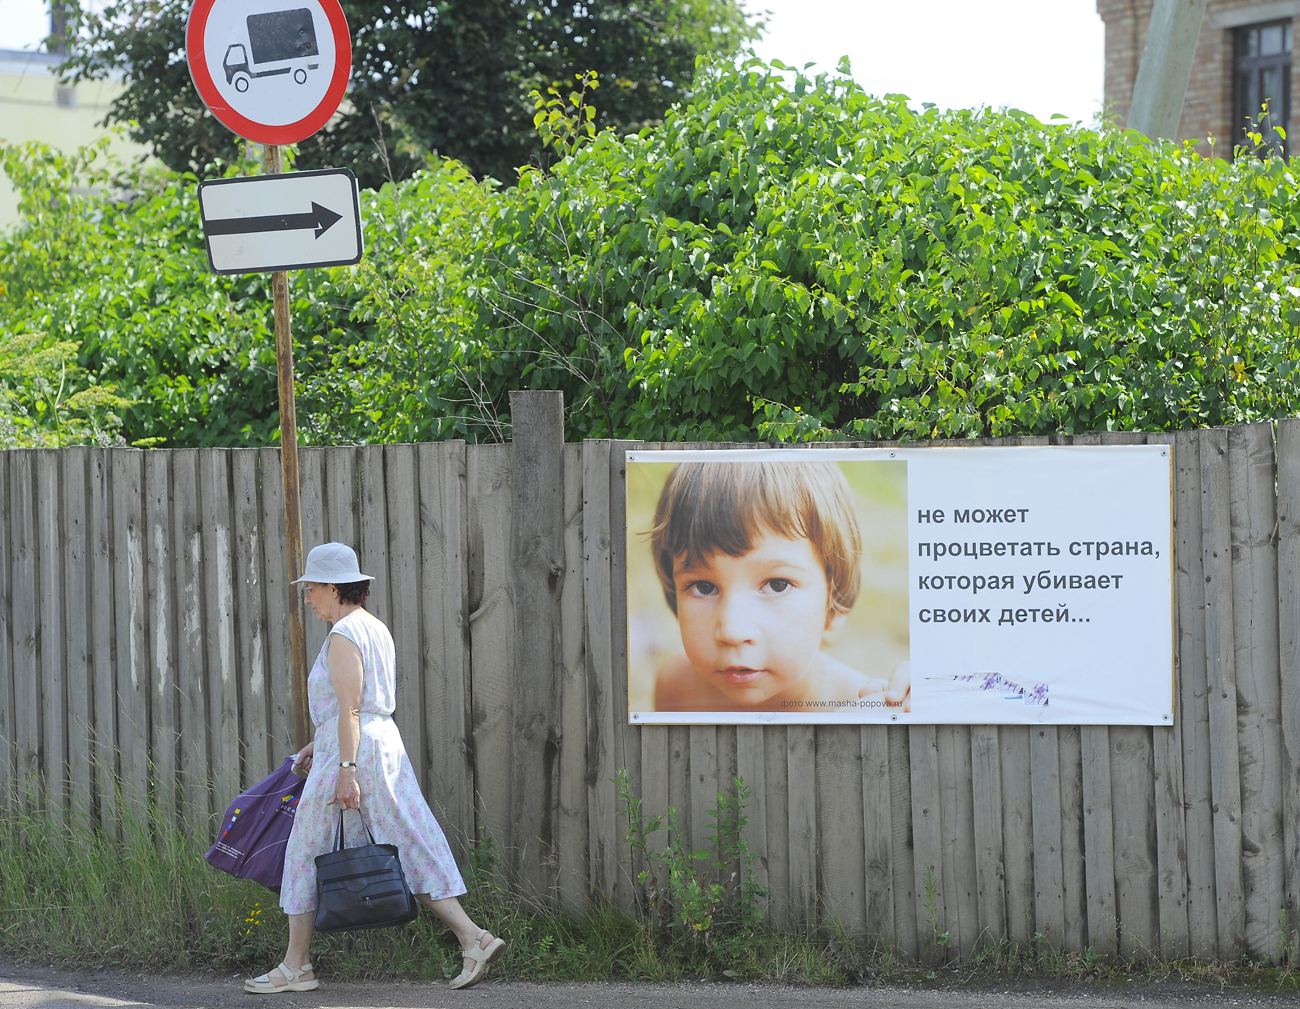 Un manifesto a Borisoglebskij, nella regione di Yaroslavl, cita: “Un paese che uccide i bambini non può fiorire”.